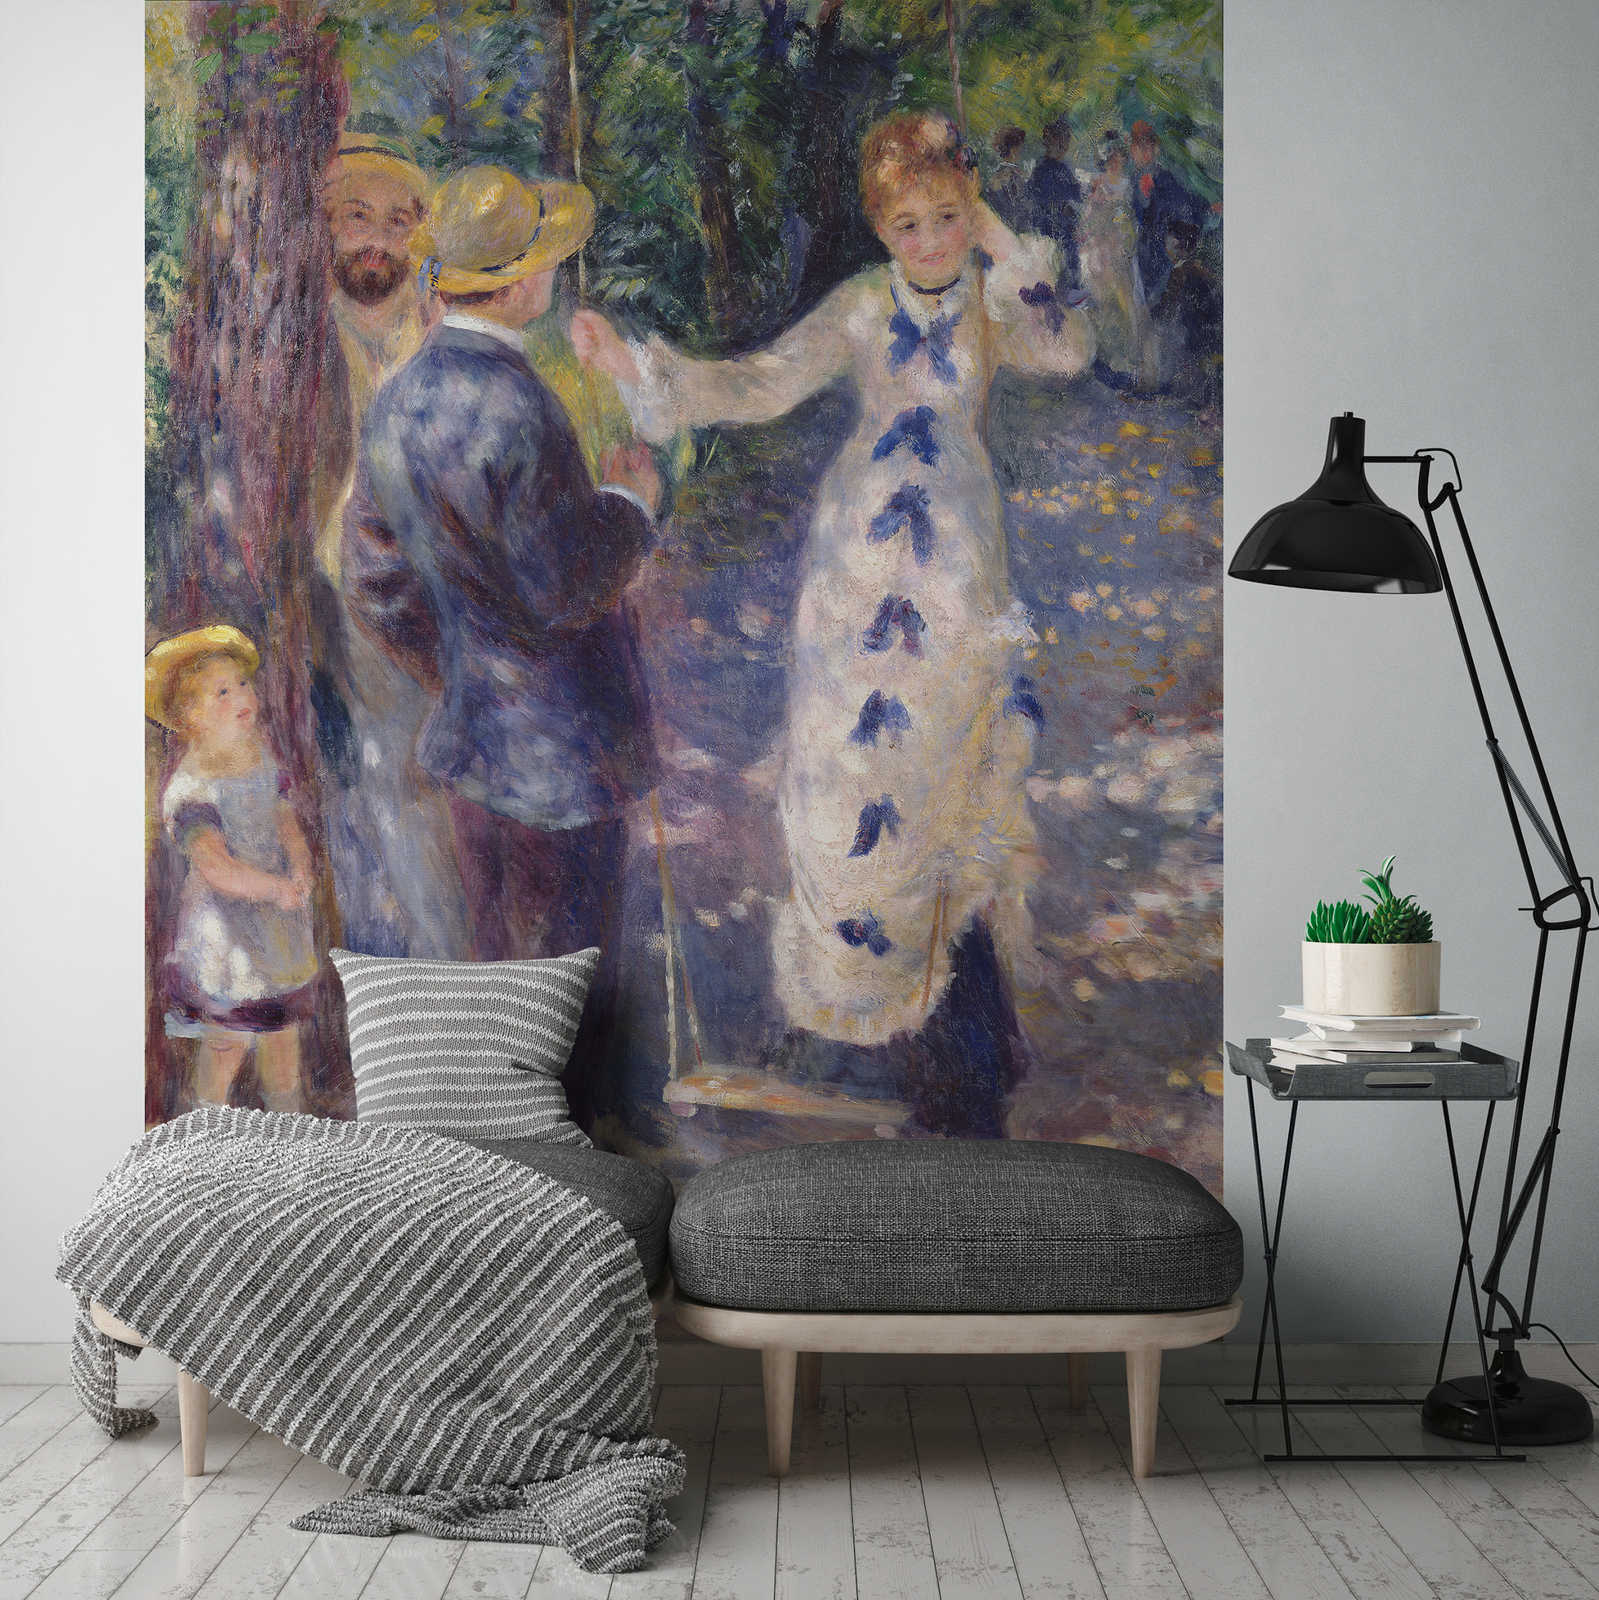             Papier peint panoramique "Sur la balançoire" de Pierre Auguste Renoir
        